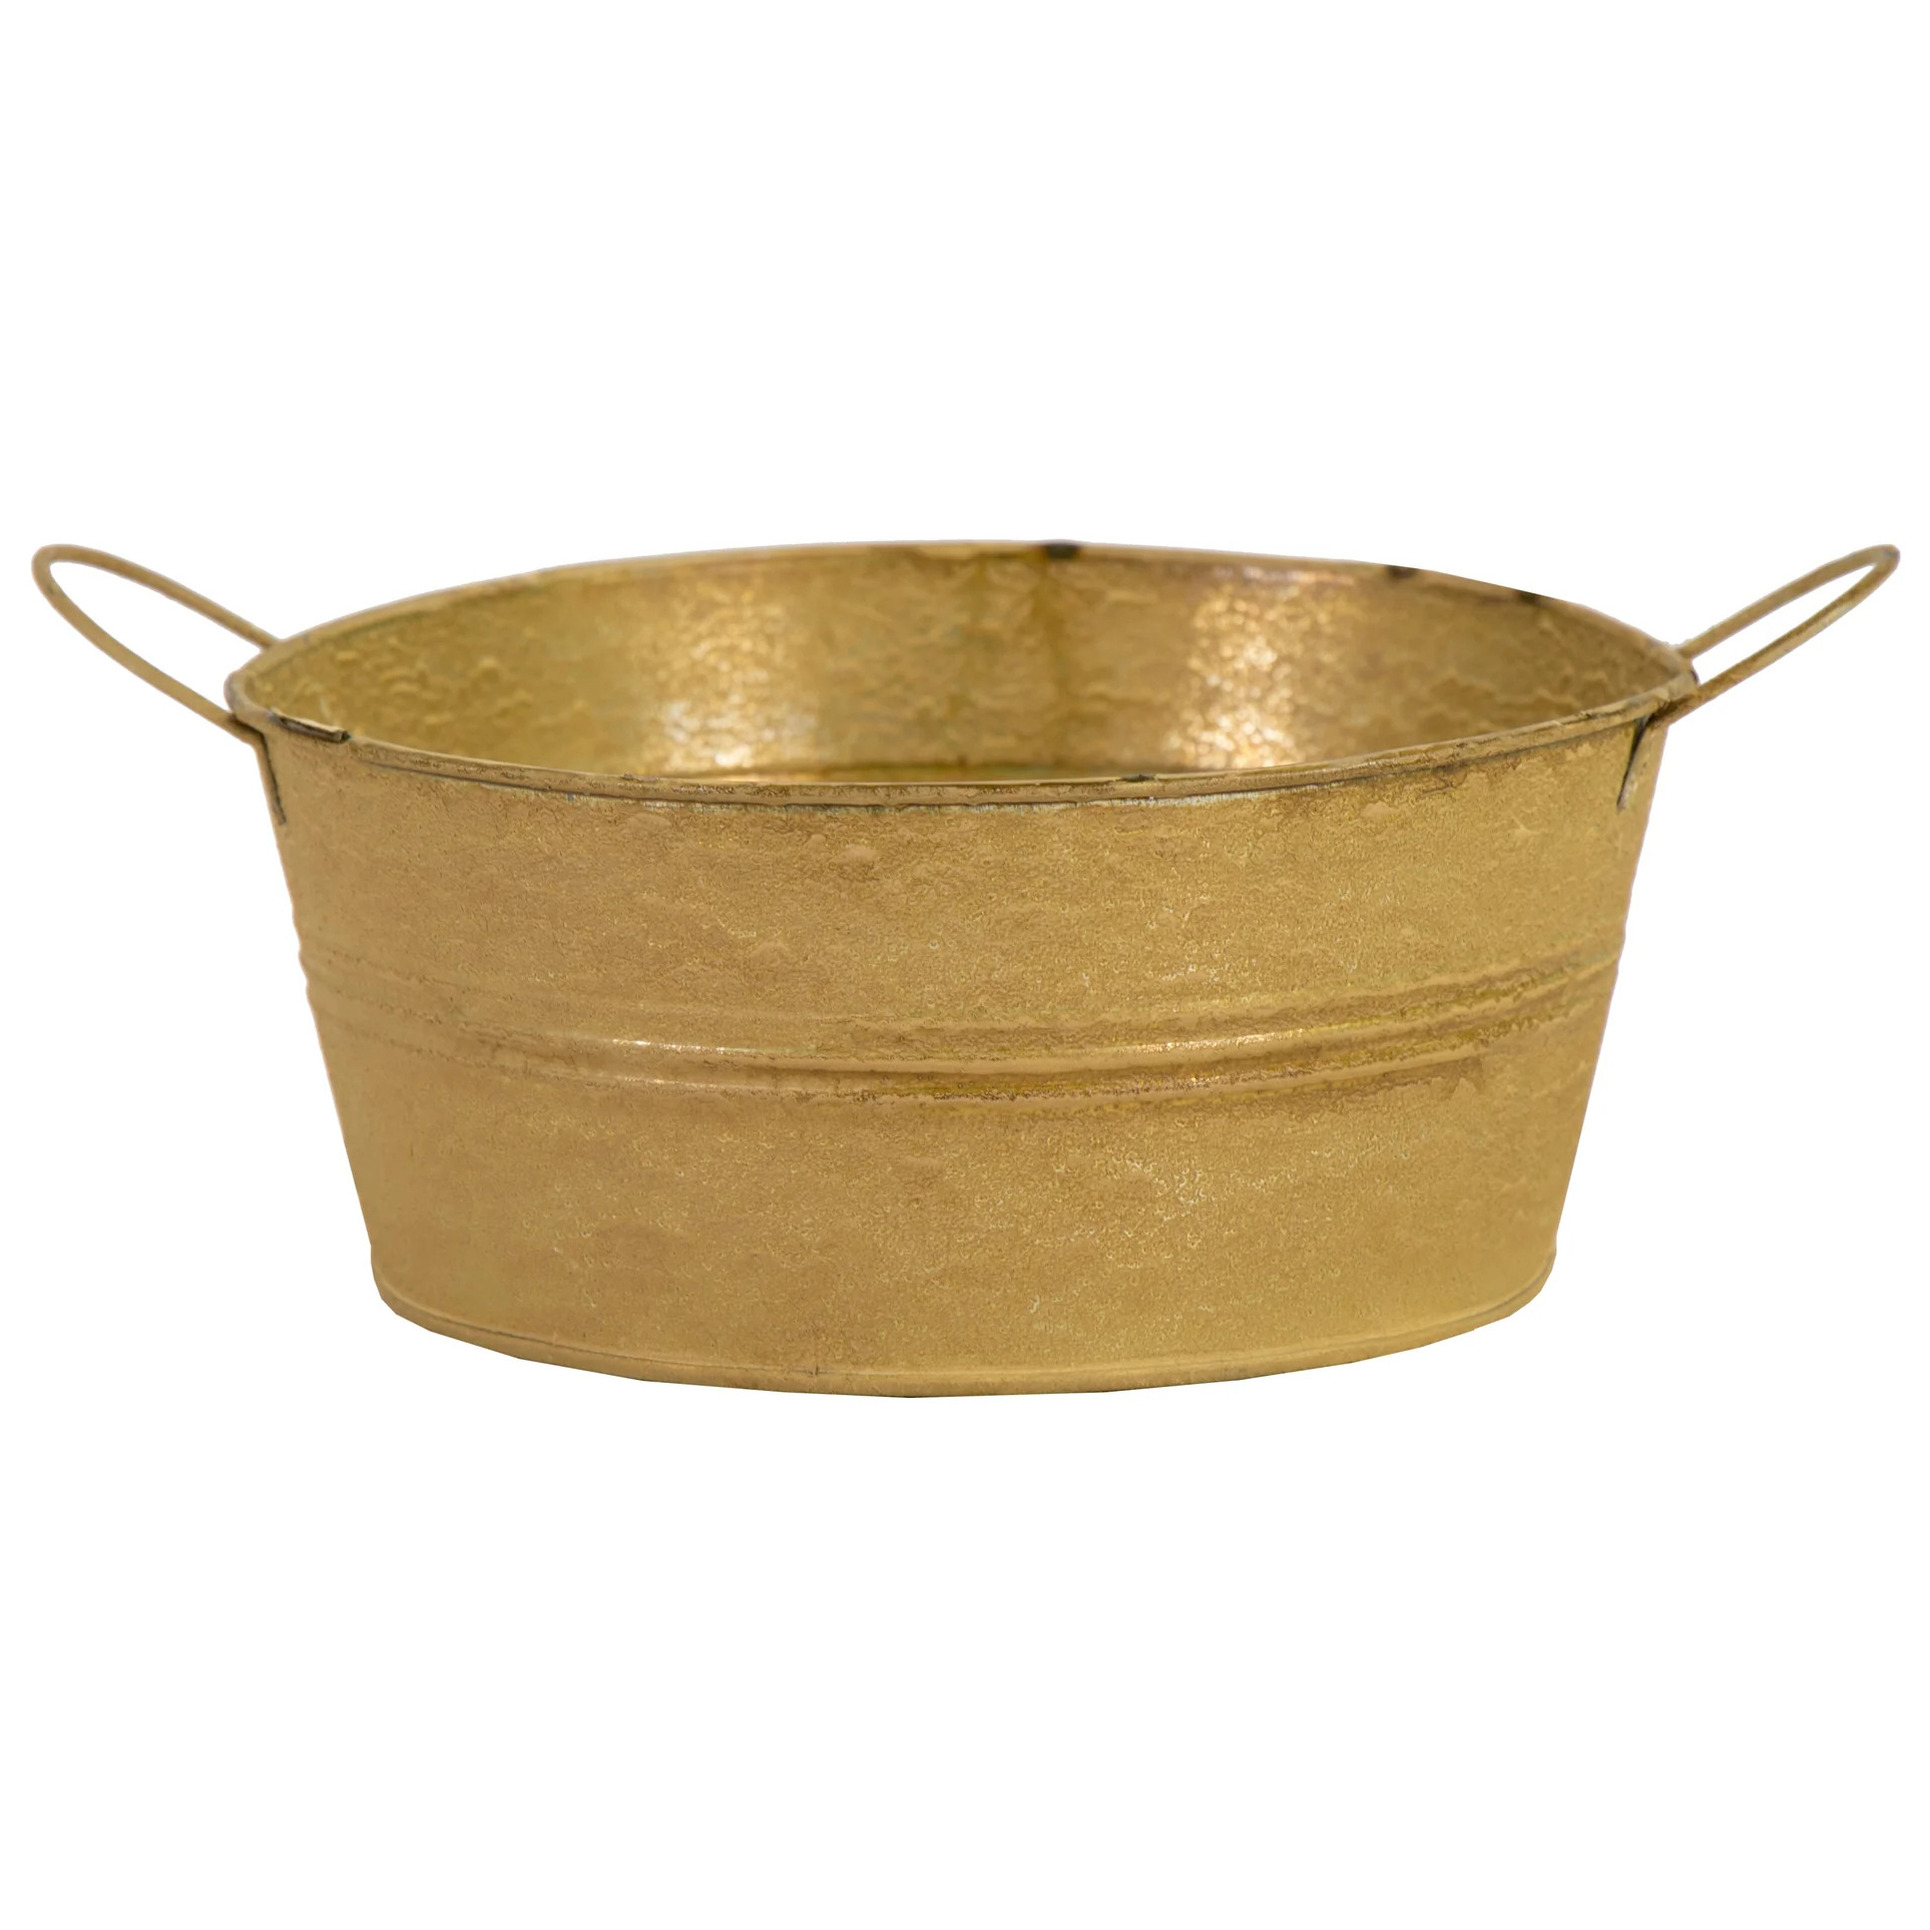 Teil/emmer/plantenpot - zink - oud goud - D19 x H9 cm